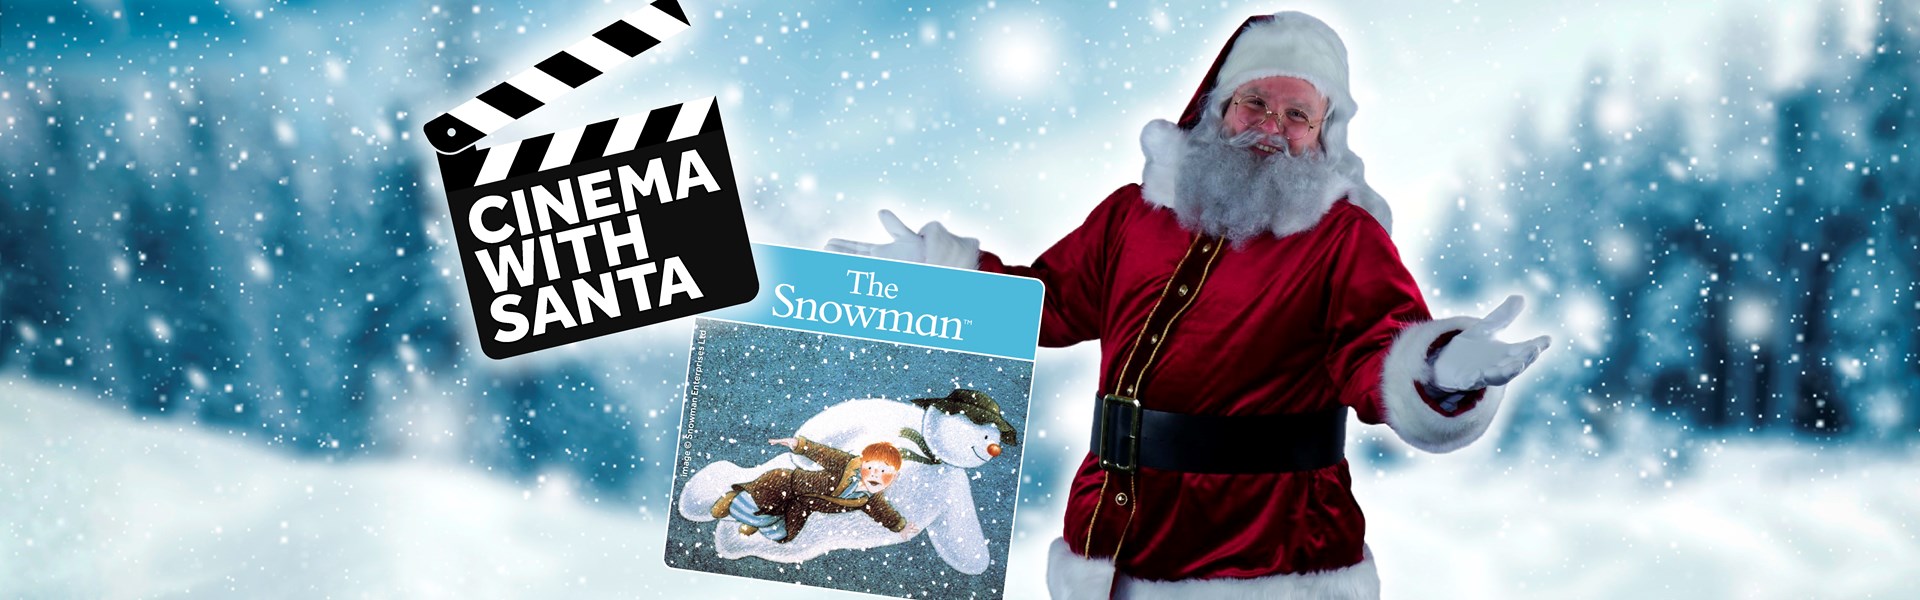 Cinema with Santa - The Snowman